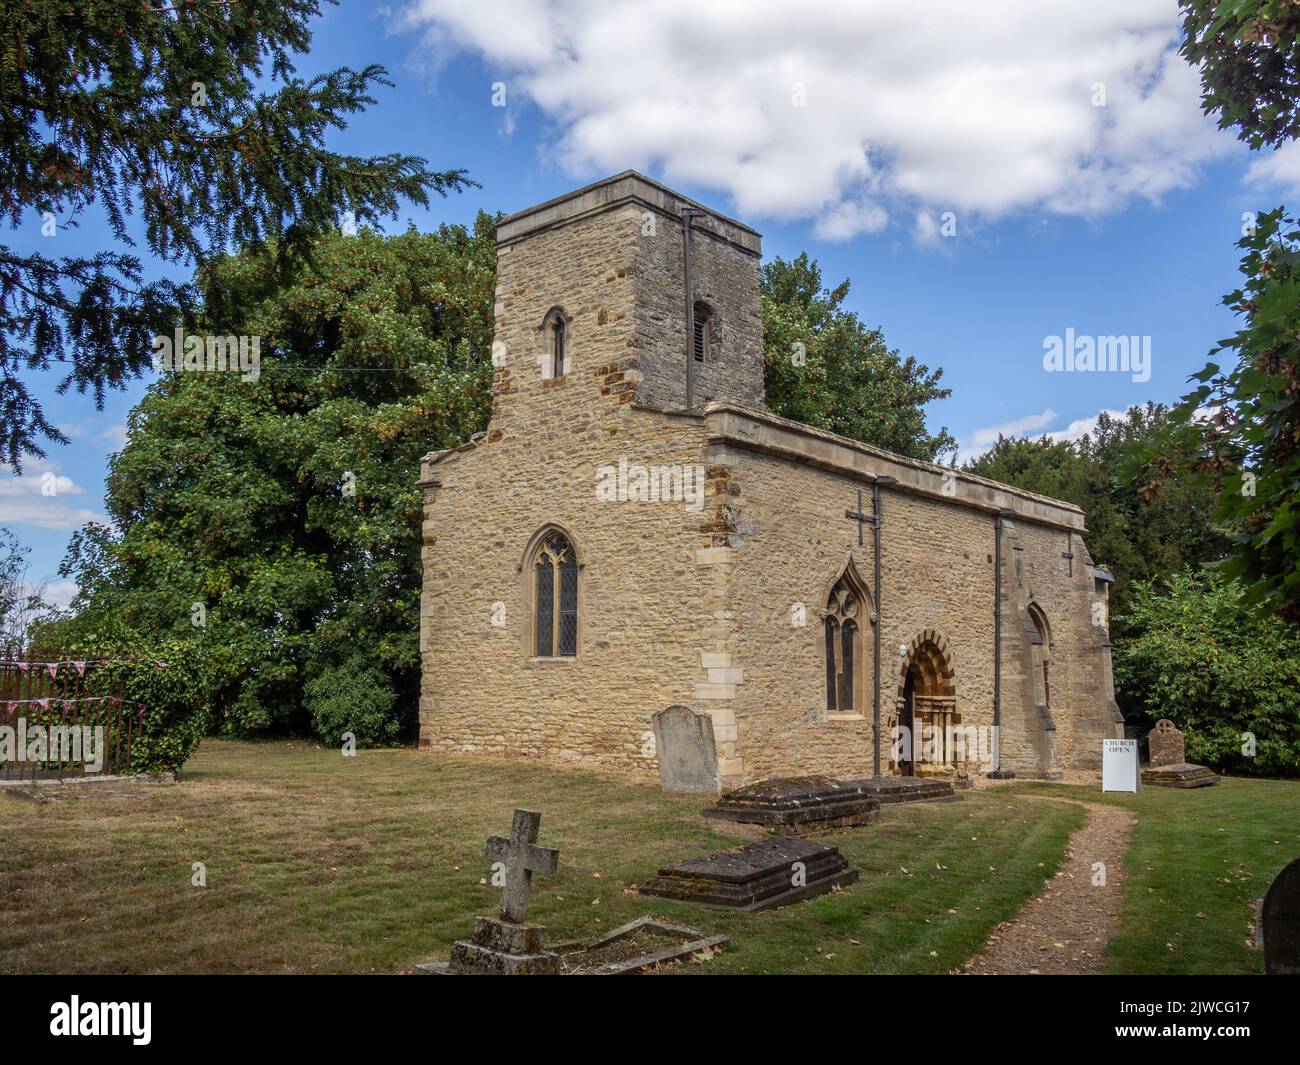 La iglesia medieval de San Michaels y todos los Ángeles en el pueblo de Farndish, Bedfordshire, Reino Unido; data de alrededor de 1200 con una torre del siglo 15. Foto de stock